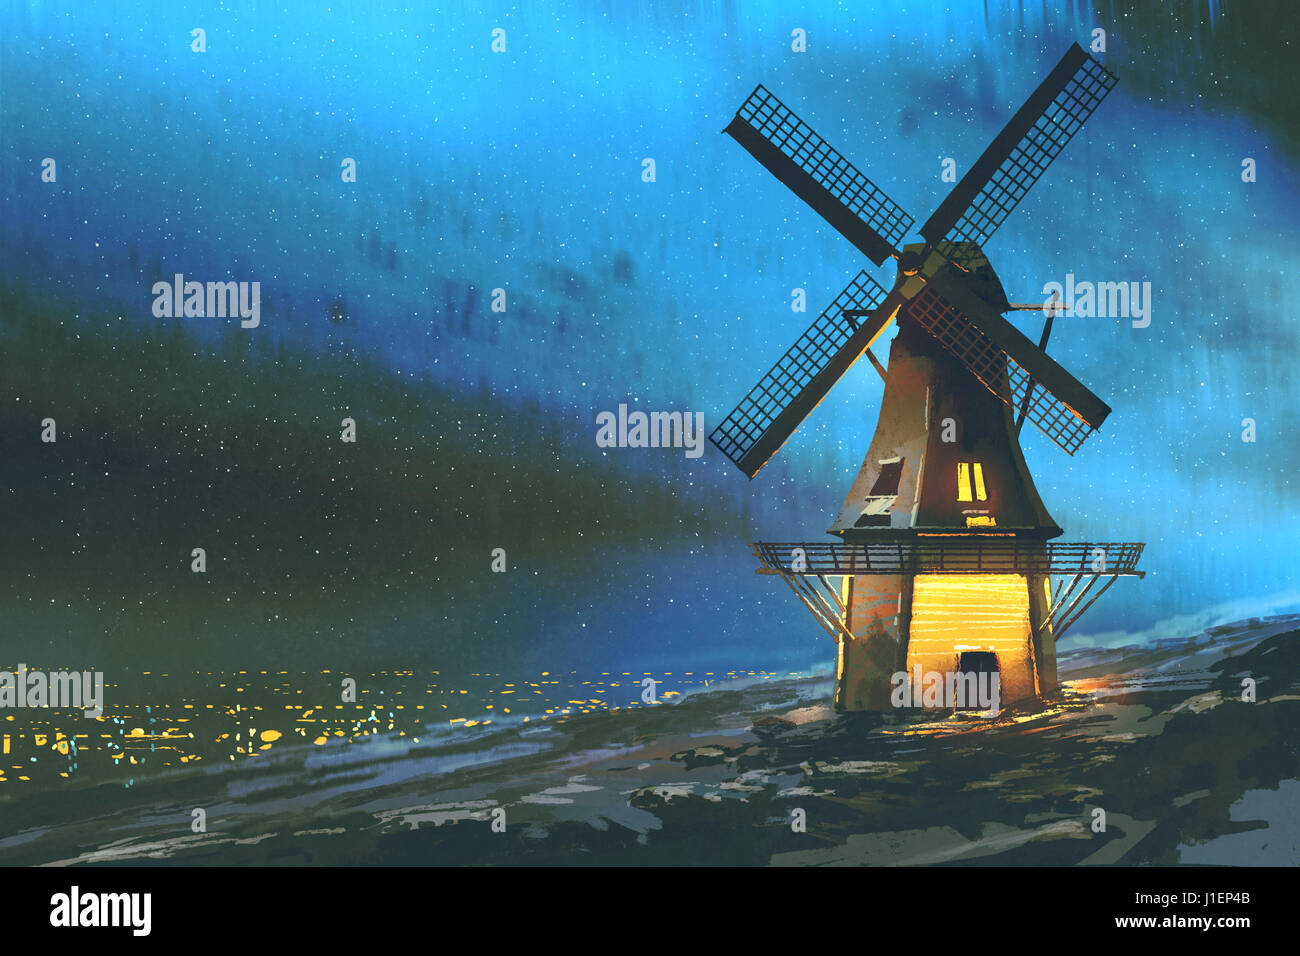 Arte digitale del paesaggio di notte con il mulino a vento sulla montagna in inverno, illustrazione pittura Foto Stock